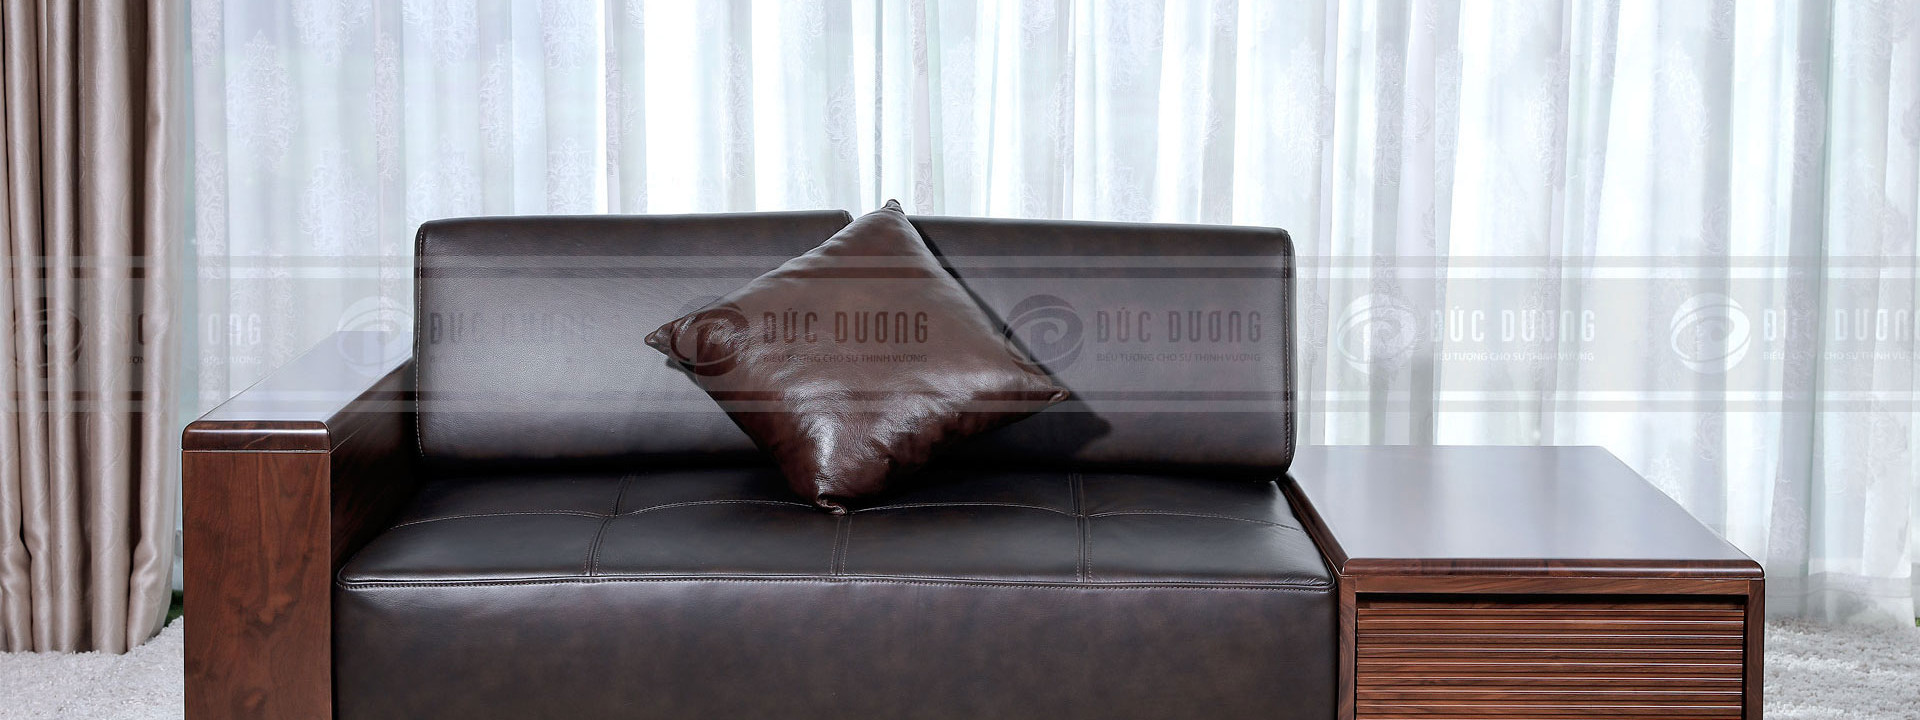 5 bộ bàn ghế sofa gỗ óc chó cao cấp đẹp phù hợp cho nhiều phong cách thiết kế